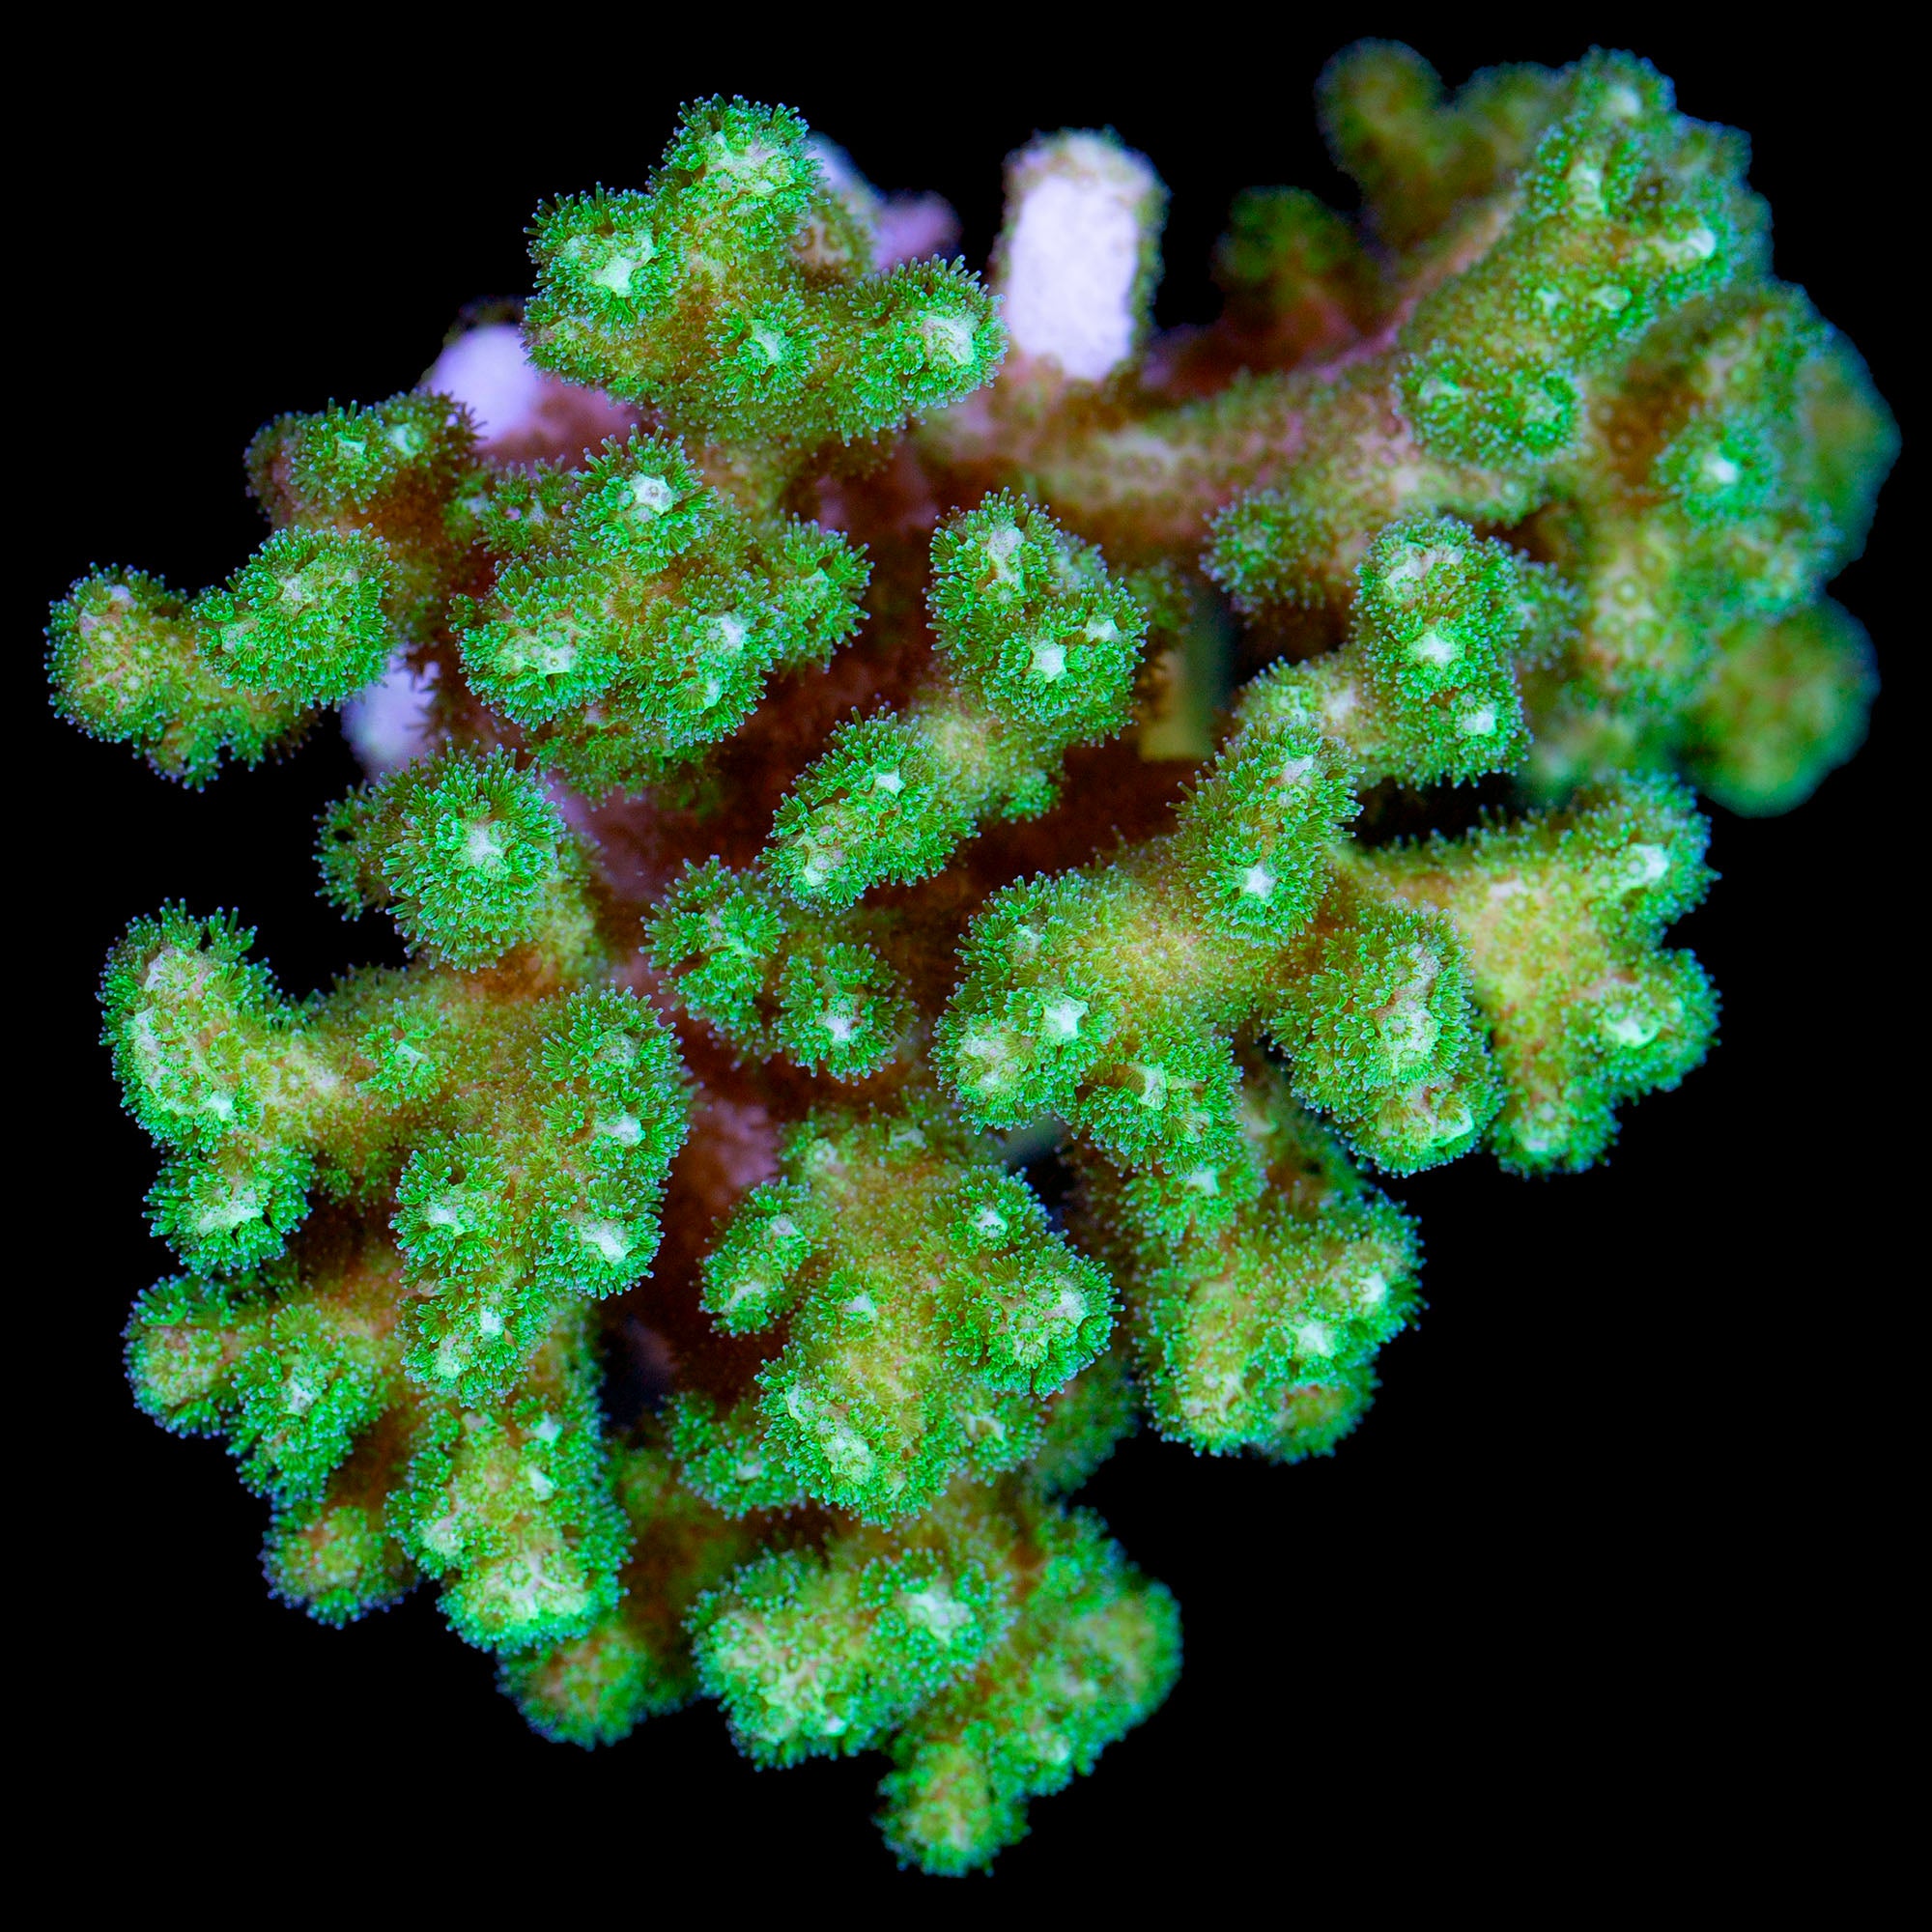 Green Pocillopora Coral Colony